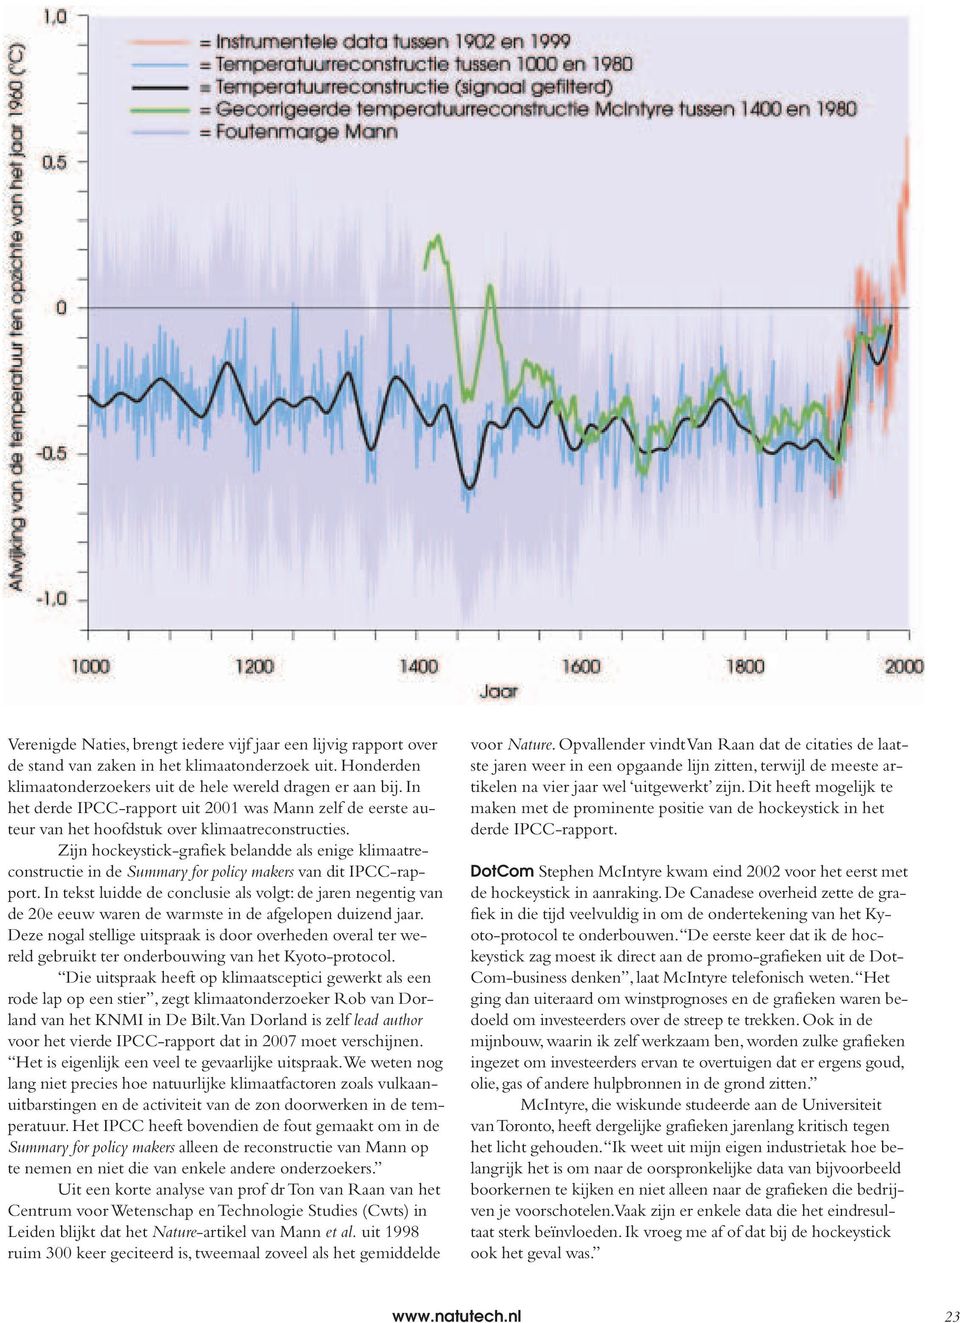 Zijn hockeystick-grafiek belandde als enige klimaatreconstructie in de Summary for policy makers van dit IPCC-rapport.